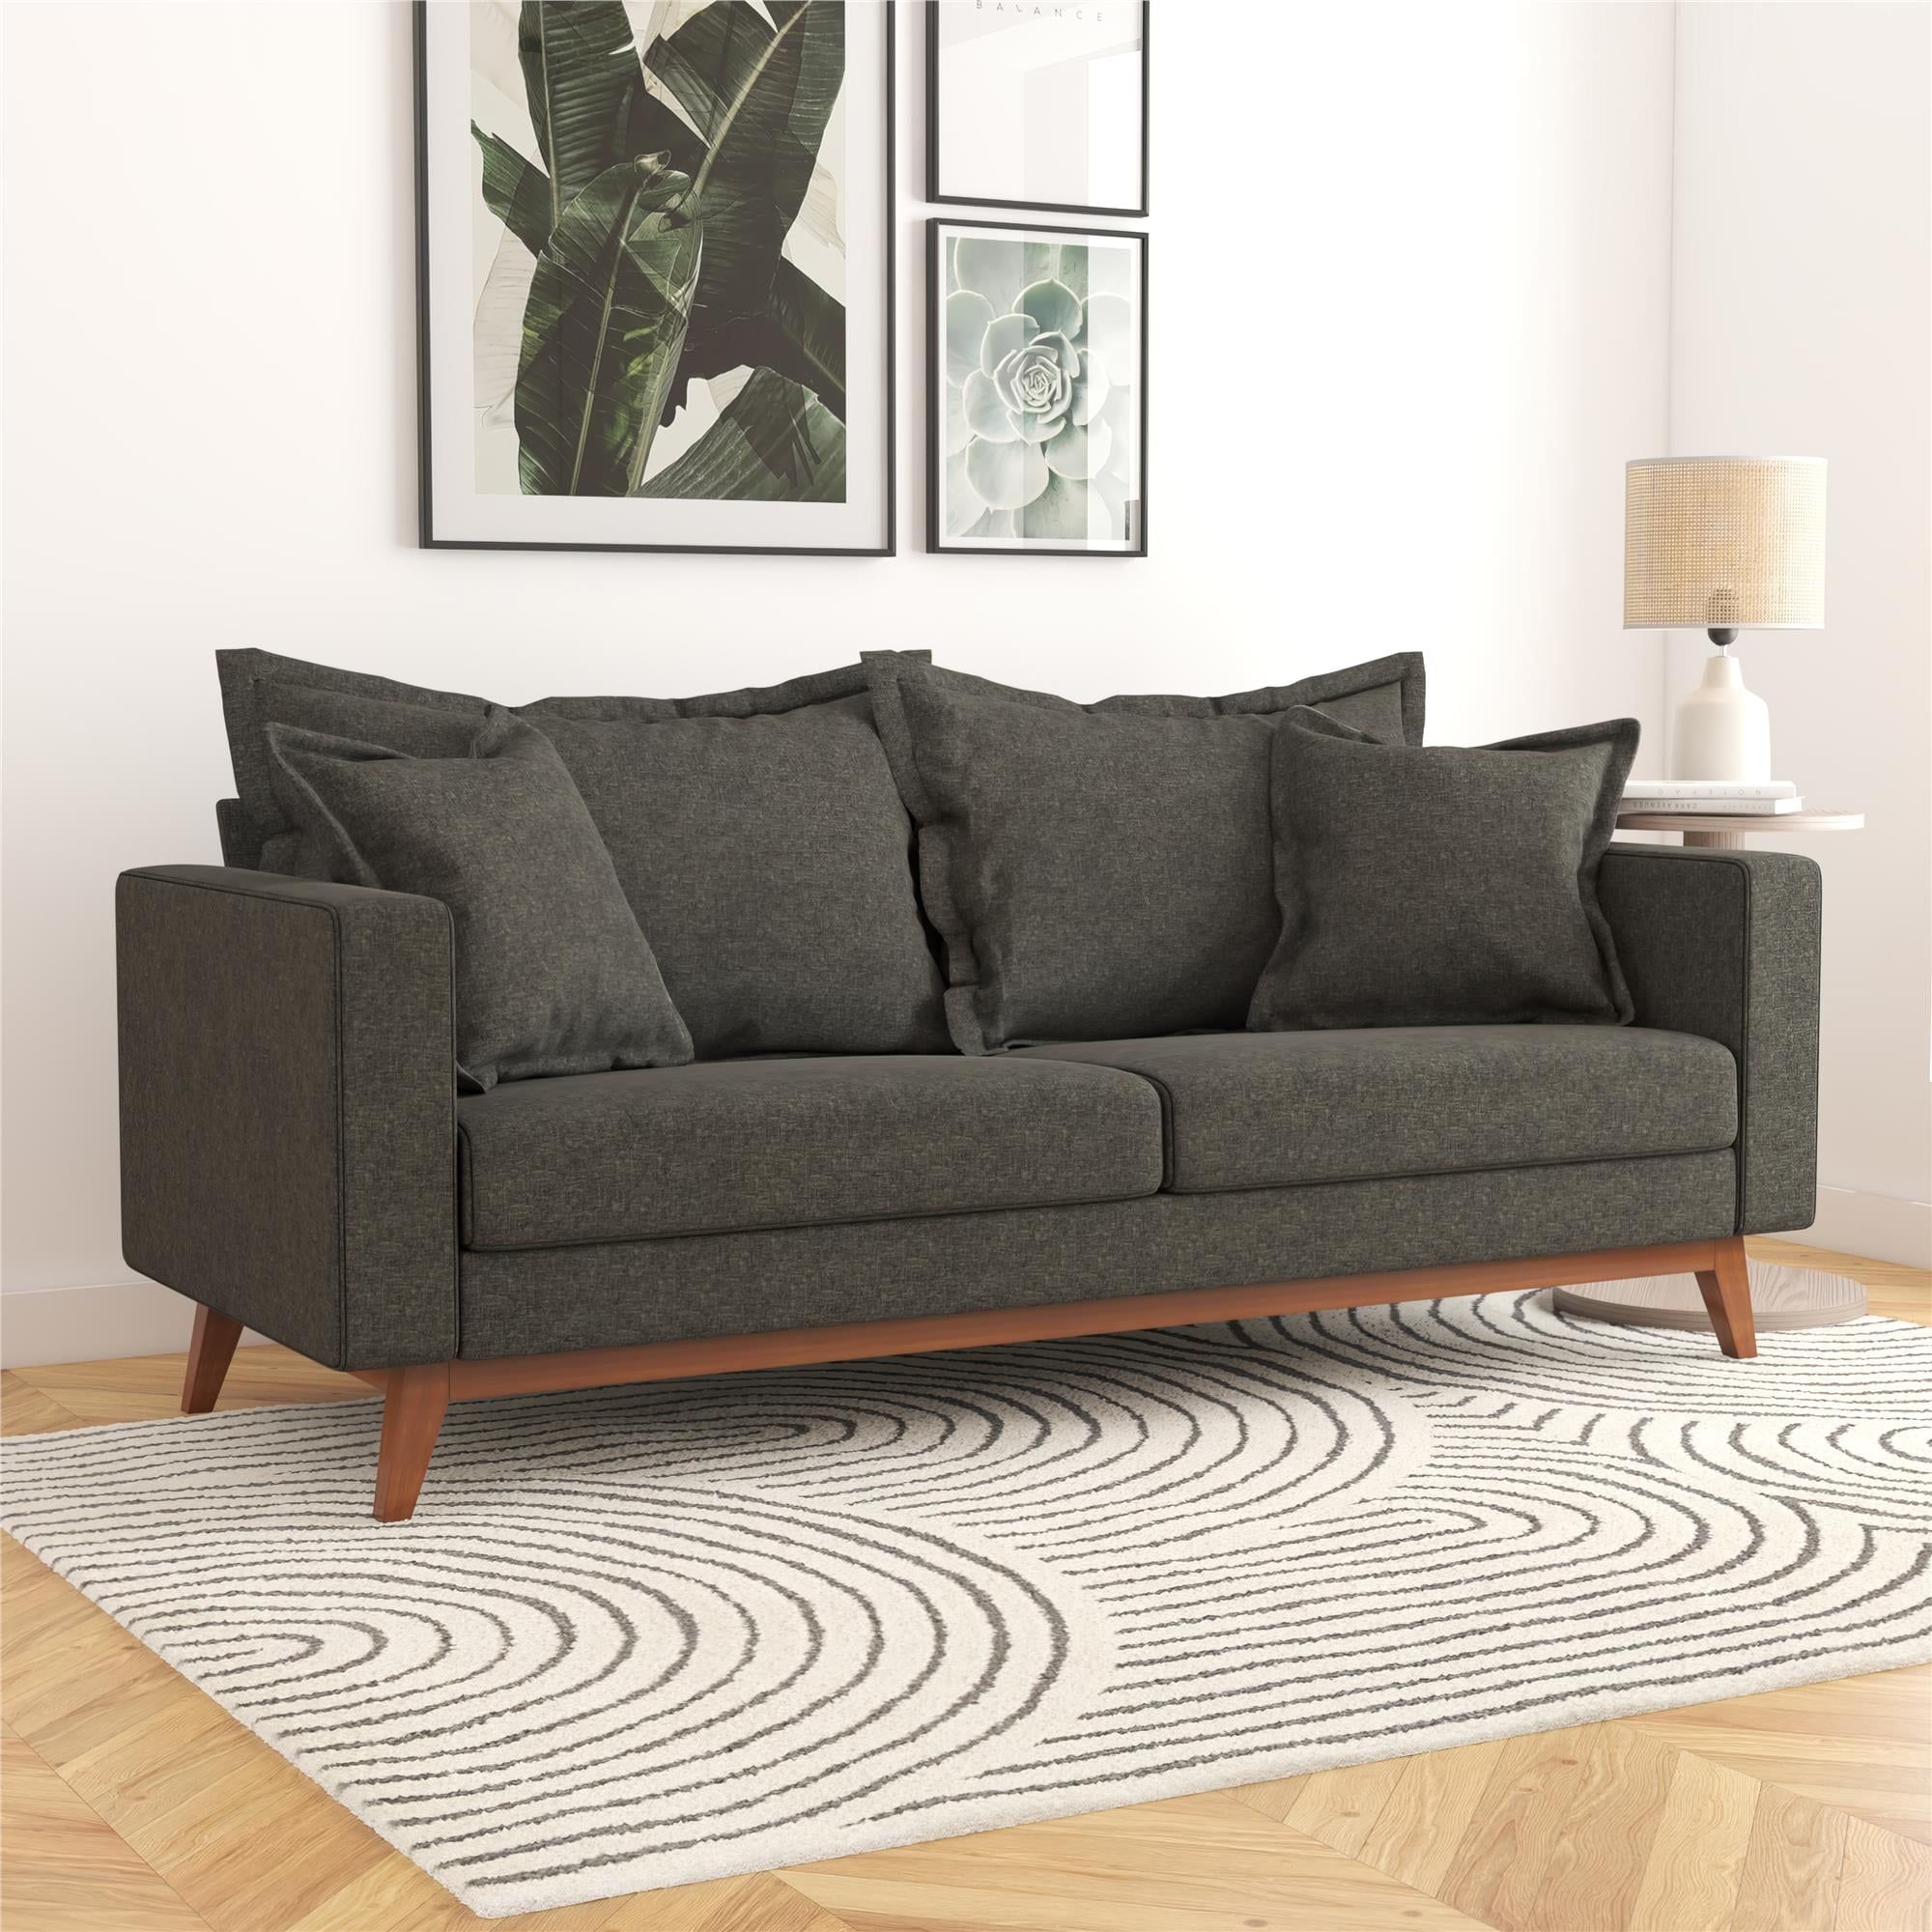 Dhp Miriam Pillowback Wood Base Sofa, Gray Linen – Walmart In Sofas With Pillowback Wood Bases (Gallery 9 of 20)